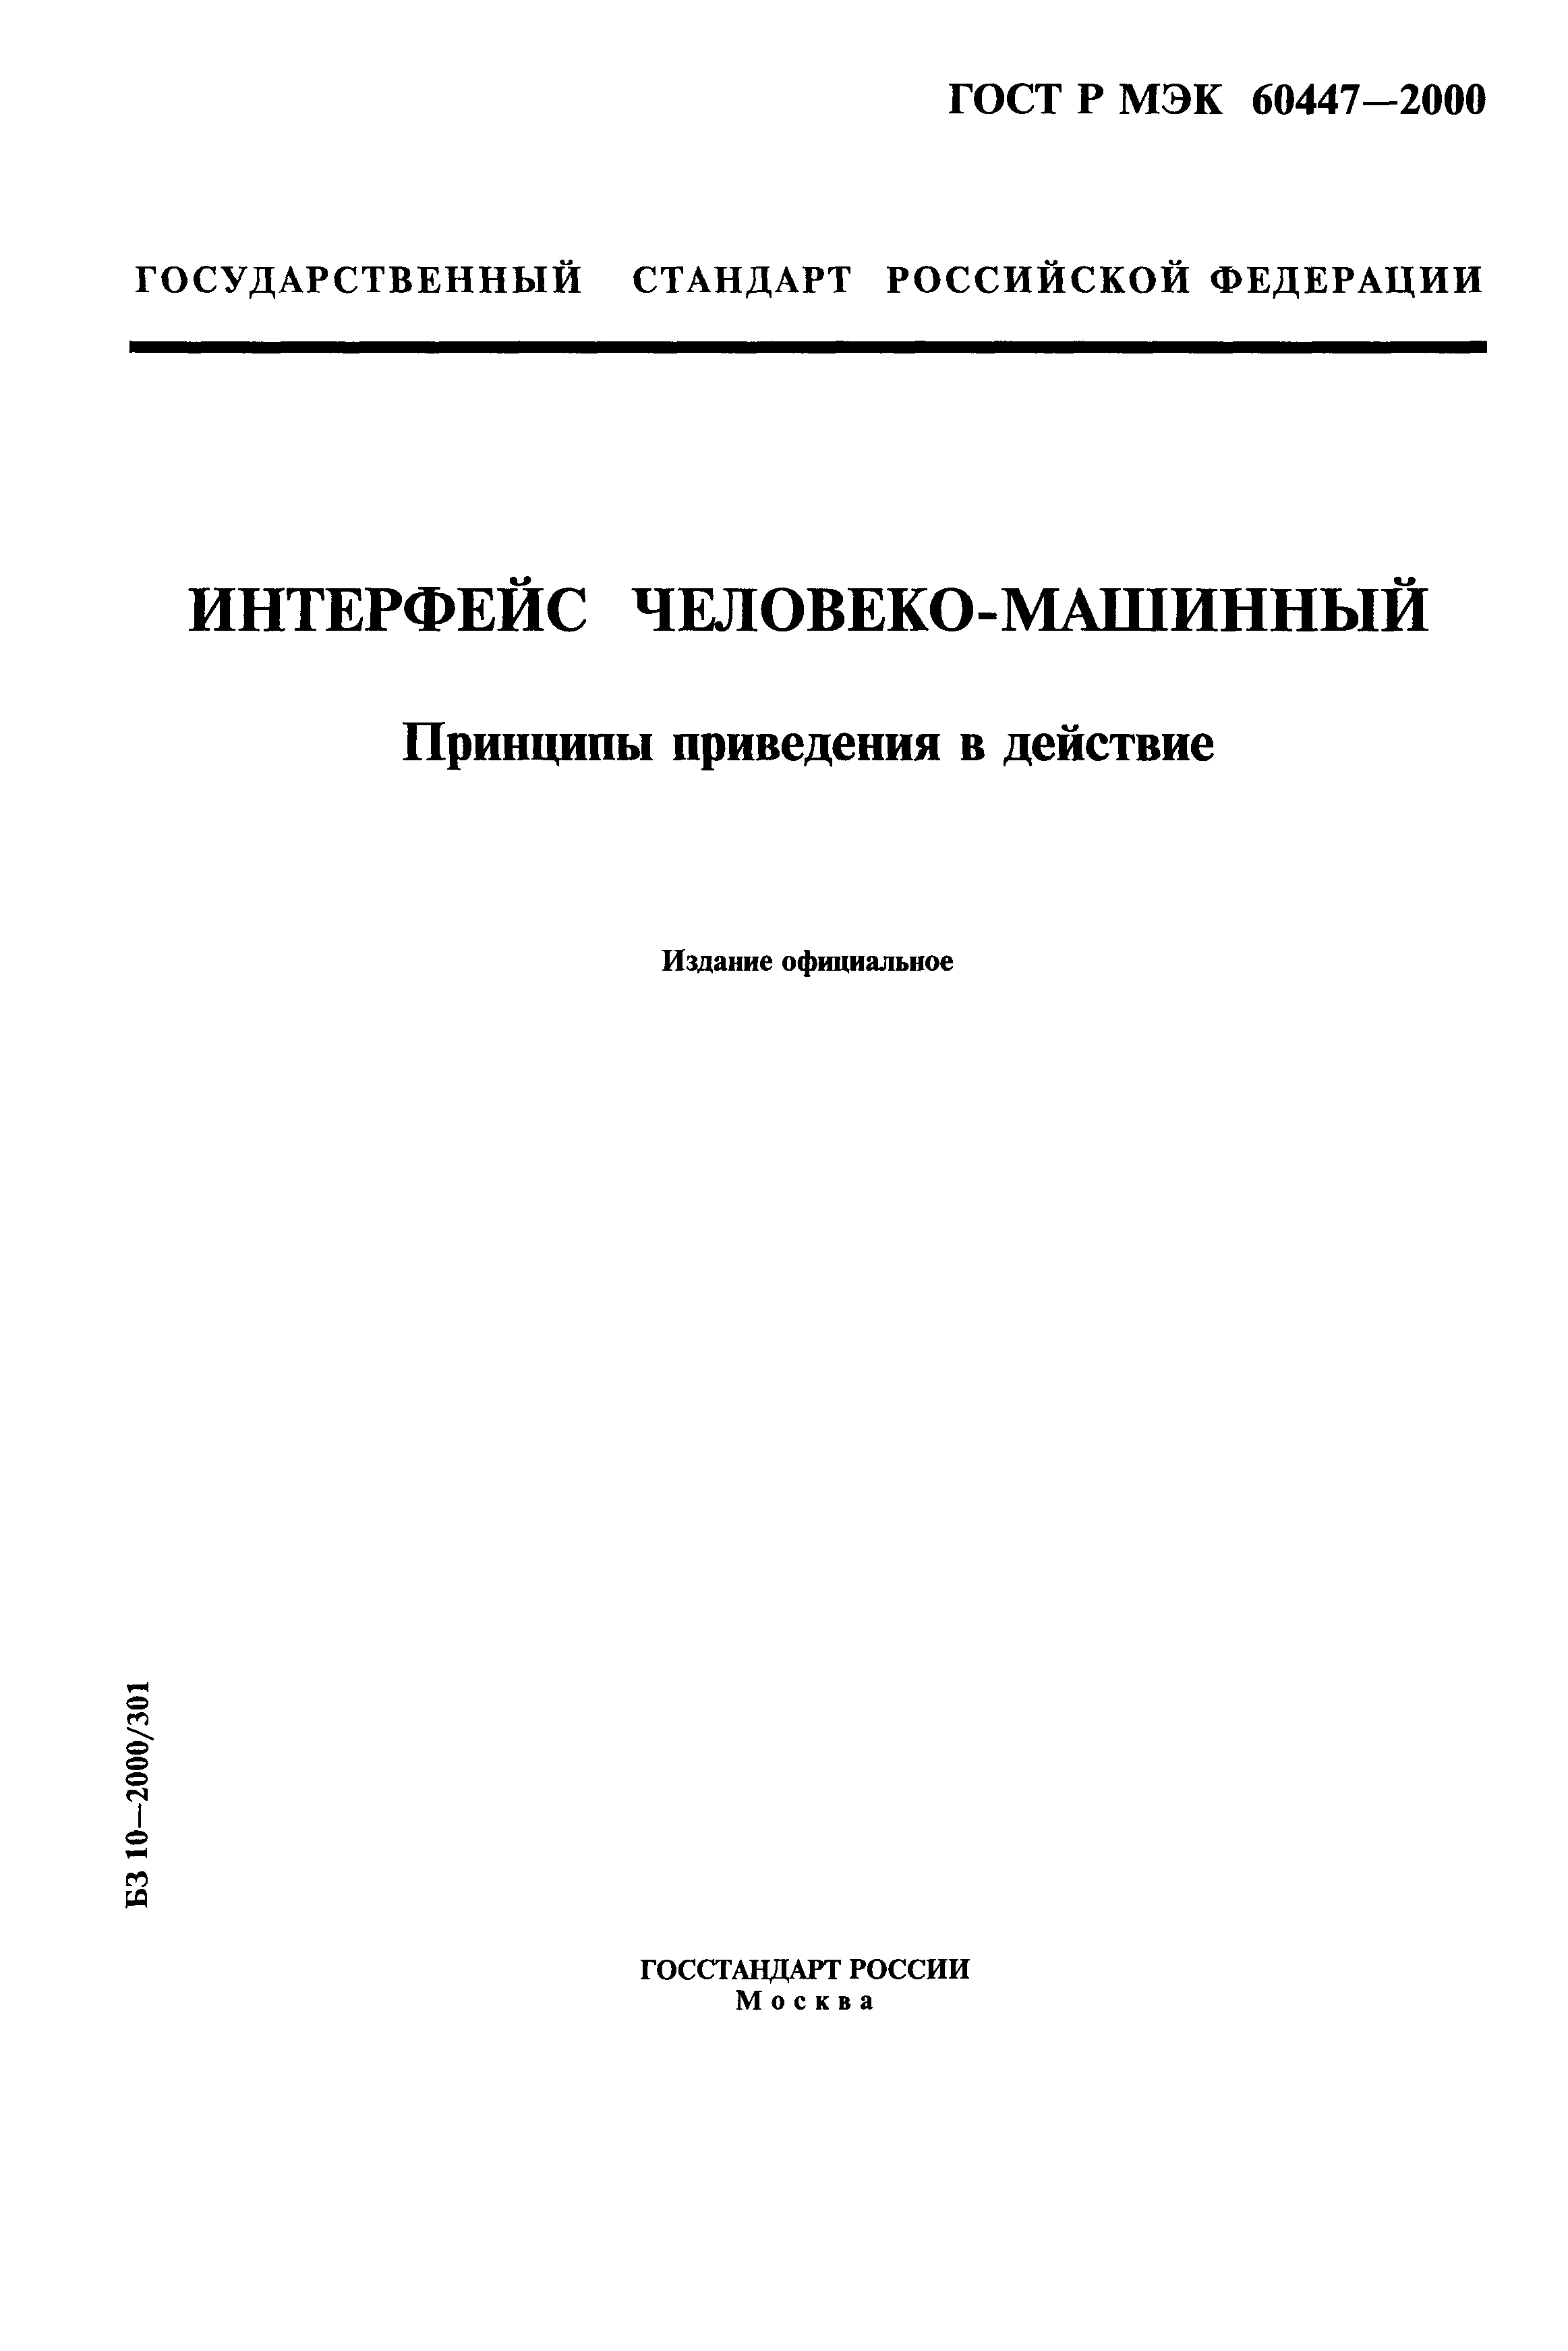 ГОСТ Р МЭК 60447-2000